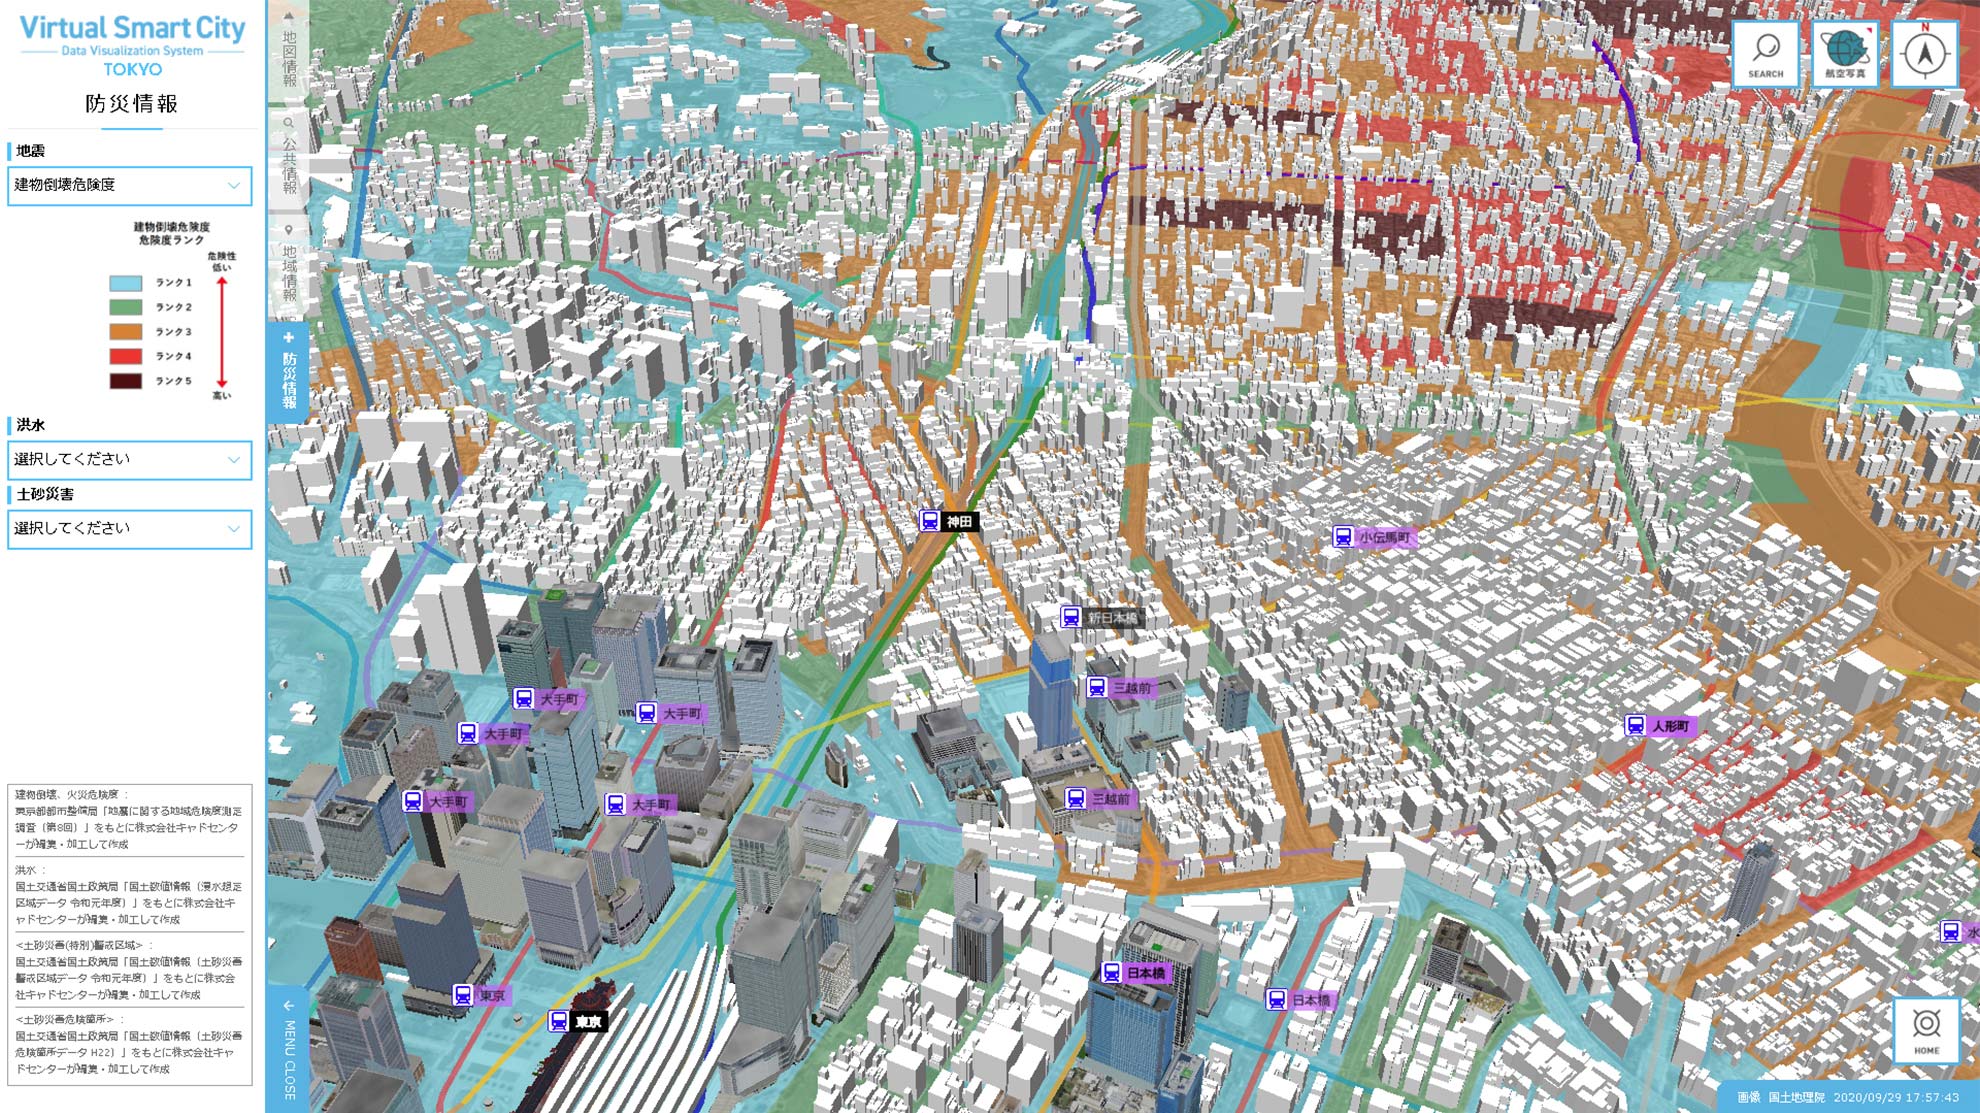 3D都市空間におけるビッグデータ可視化ソリューション「Virtual Smart City」をリリースしました